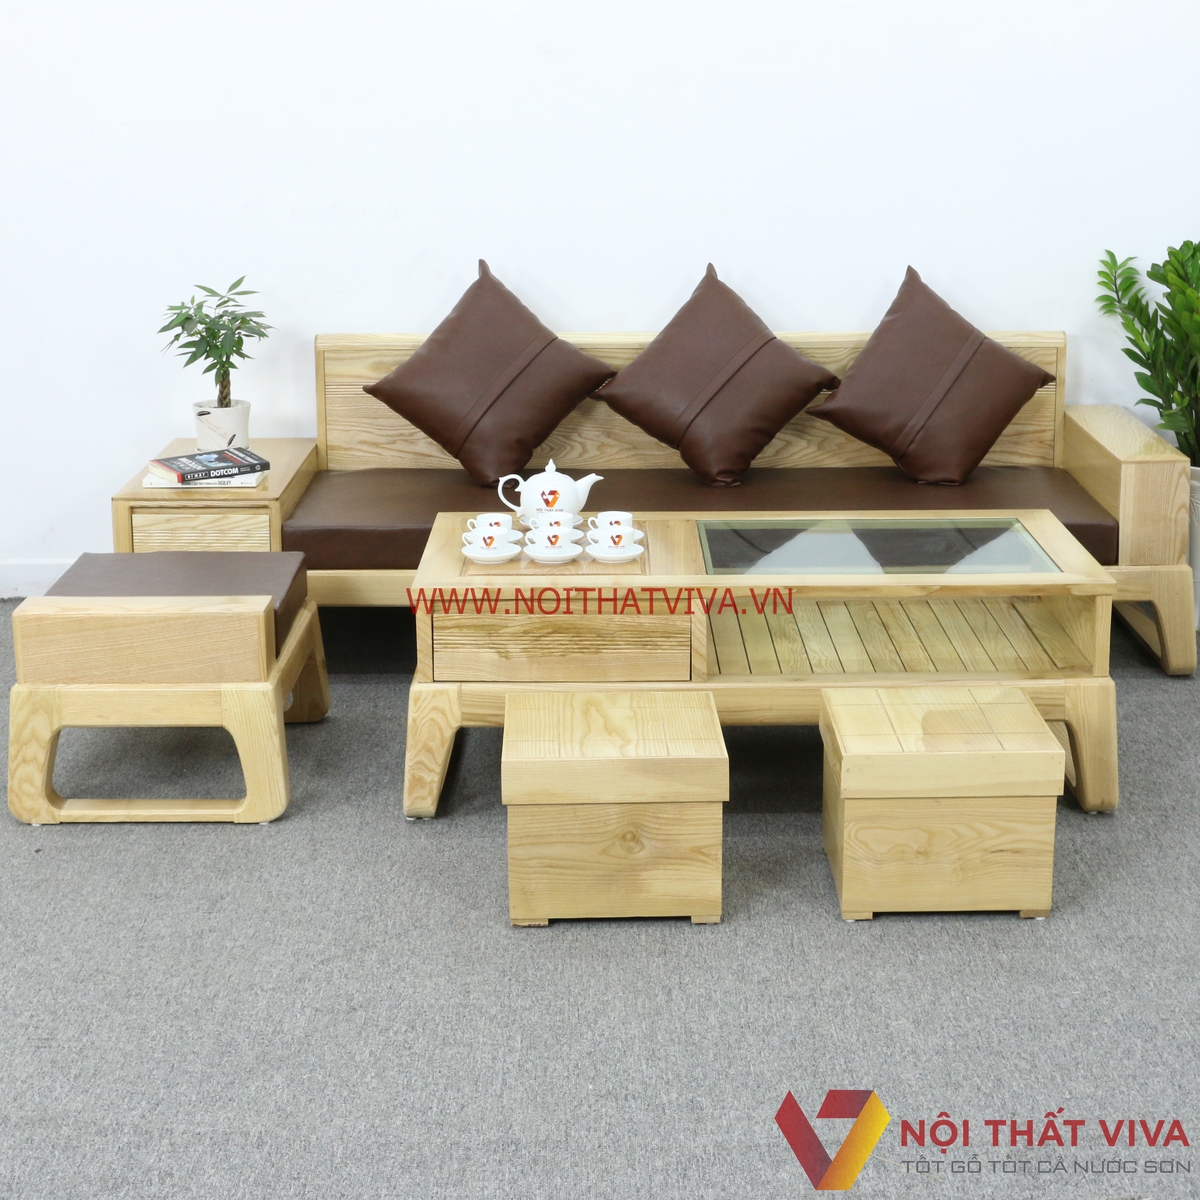 Hãy cùng khám phá bàn ghế phòng khách gỗ với thiết kế sang trọng và tinh tế. Sự kết hợp hoàn hảo giữa chất liệu gỗ tự nhiên và chi tiết tinh xảo, tạo nên một không gian phòng khách ấm áp và đẳng cấp.